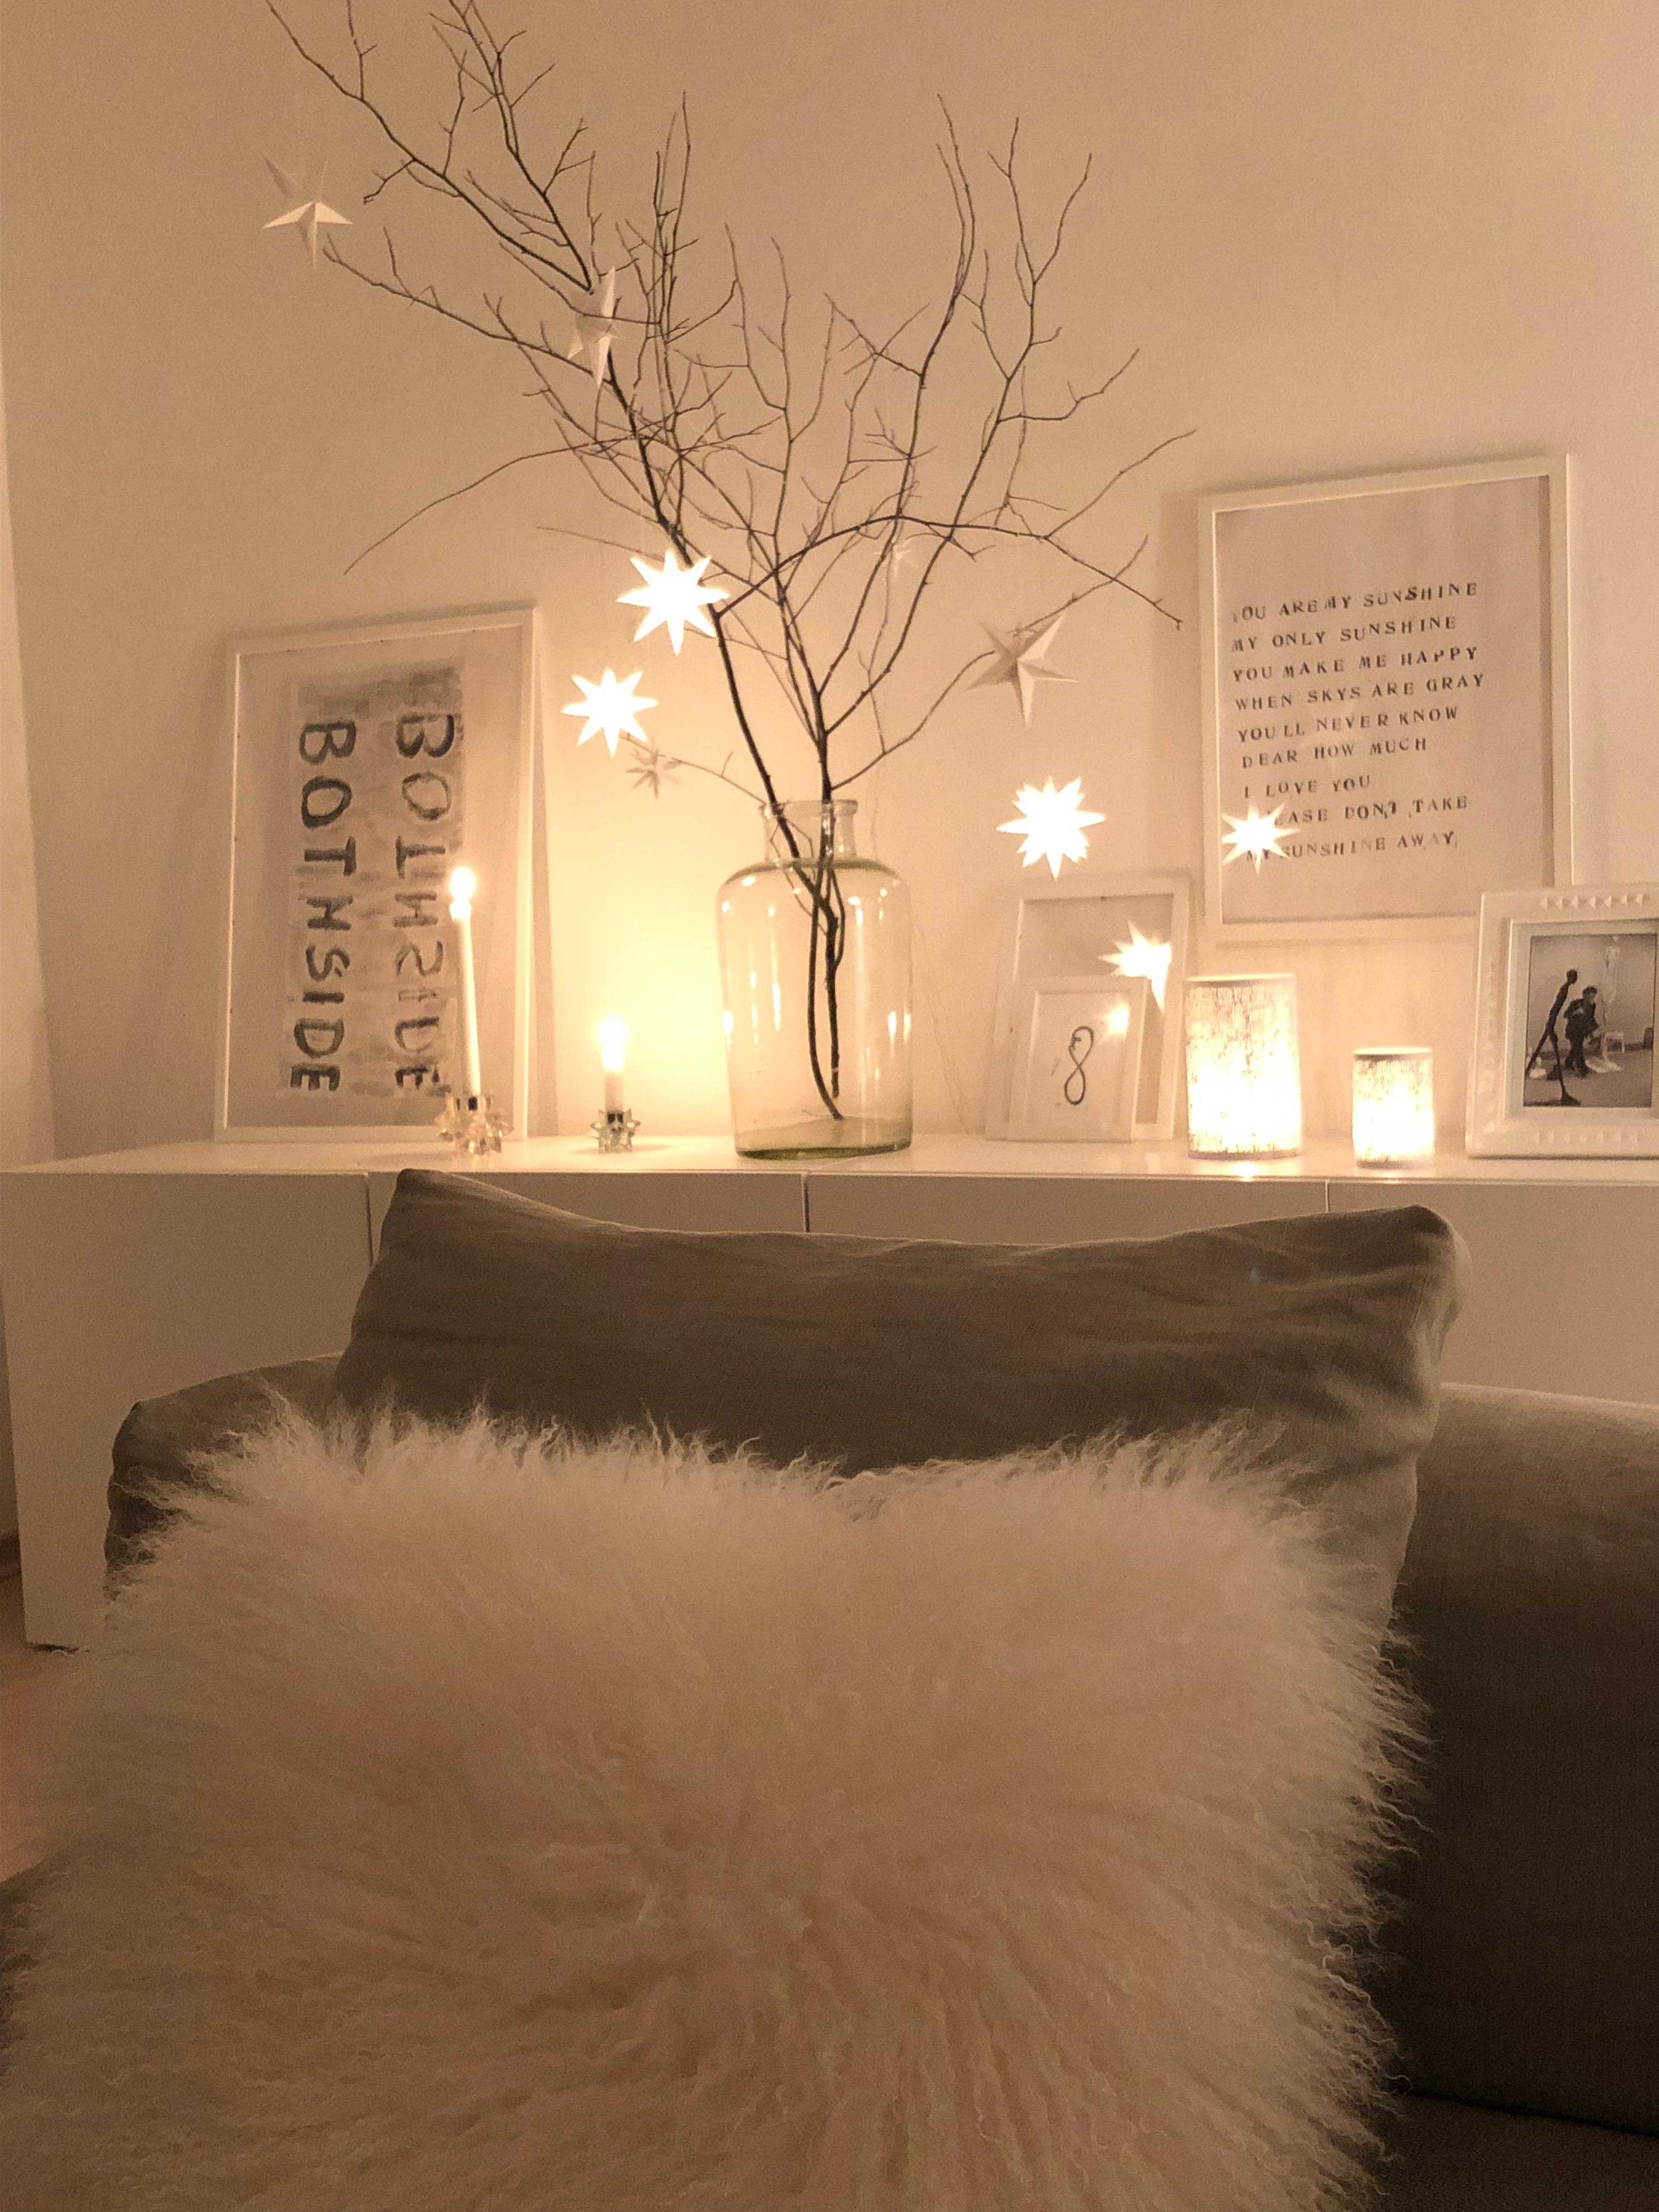 #weihnachten  #sterne #scandi
#minimalisitisch #cozy #lichterglanz


Sterne ⭐️ gehen immer , auch schon im November! 